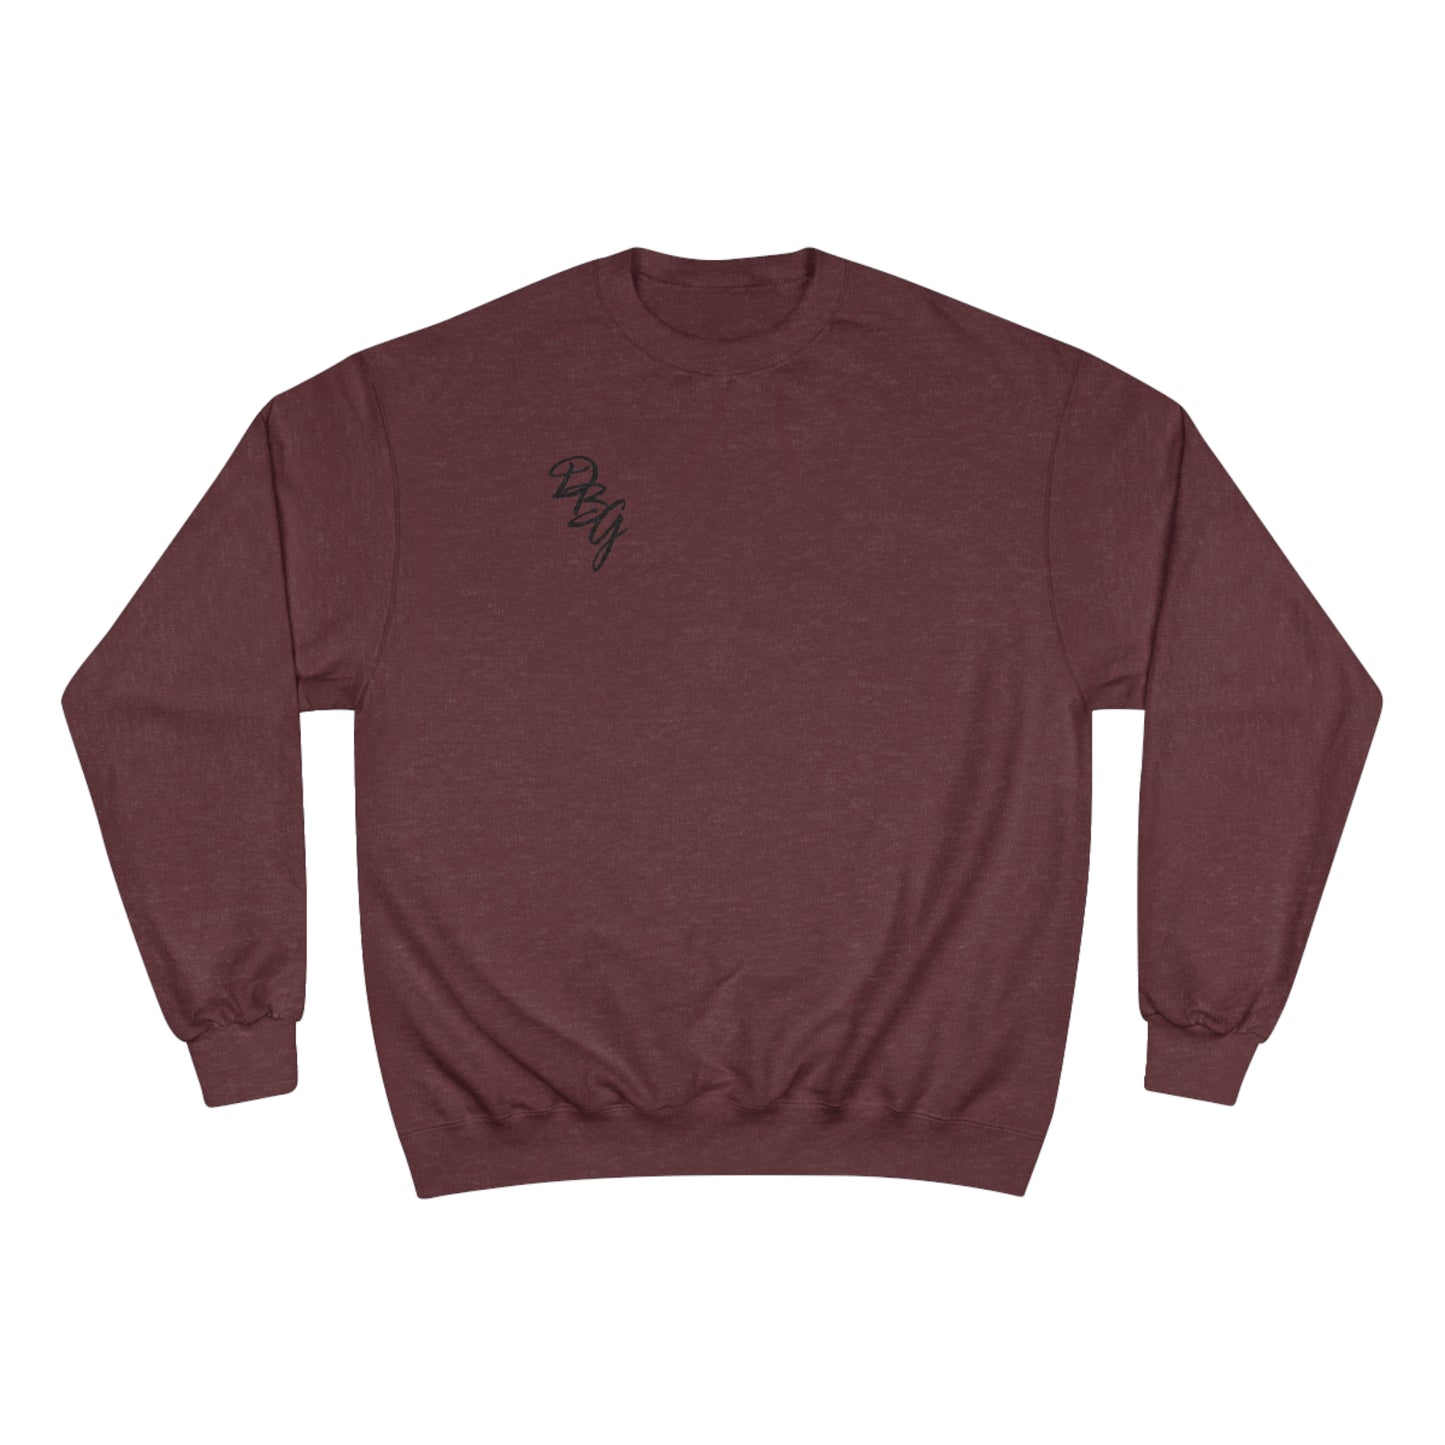 DBG/Champion Essential Sweatshirt